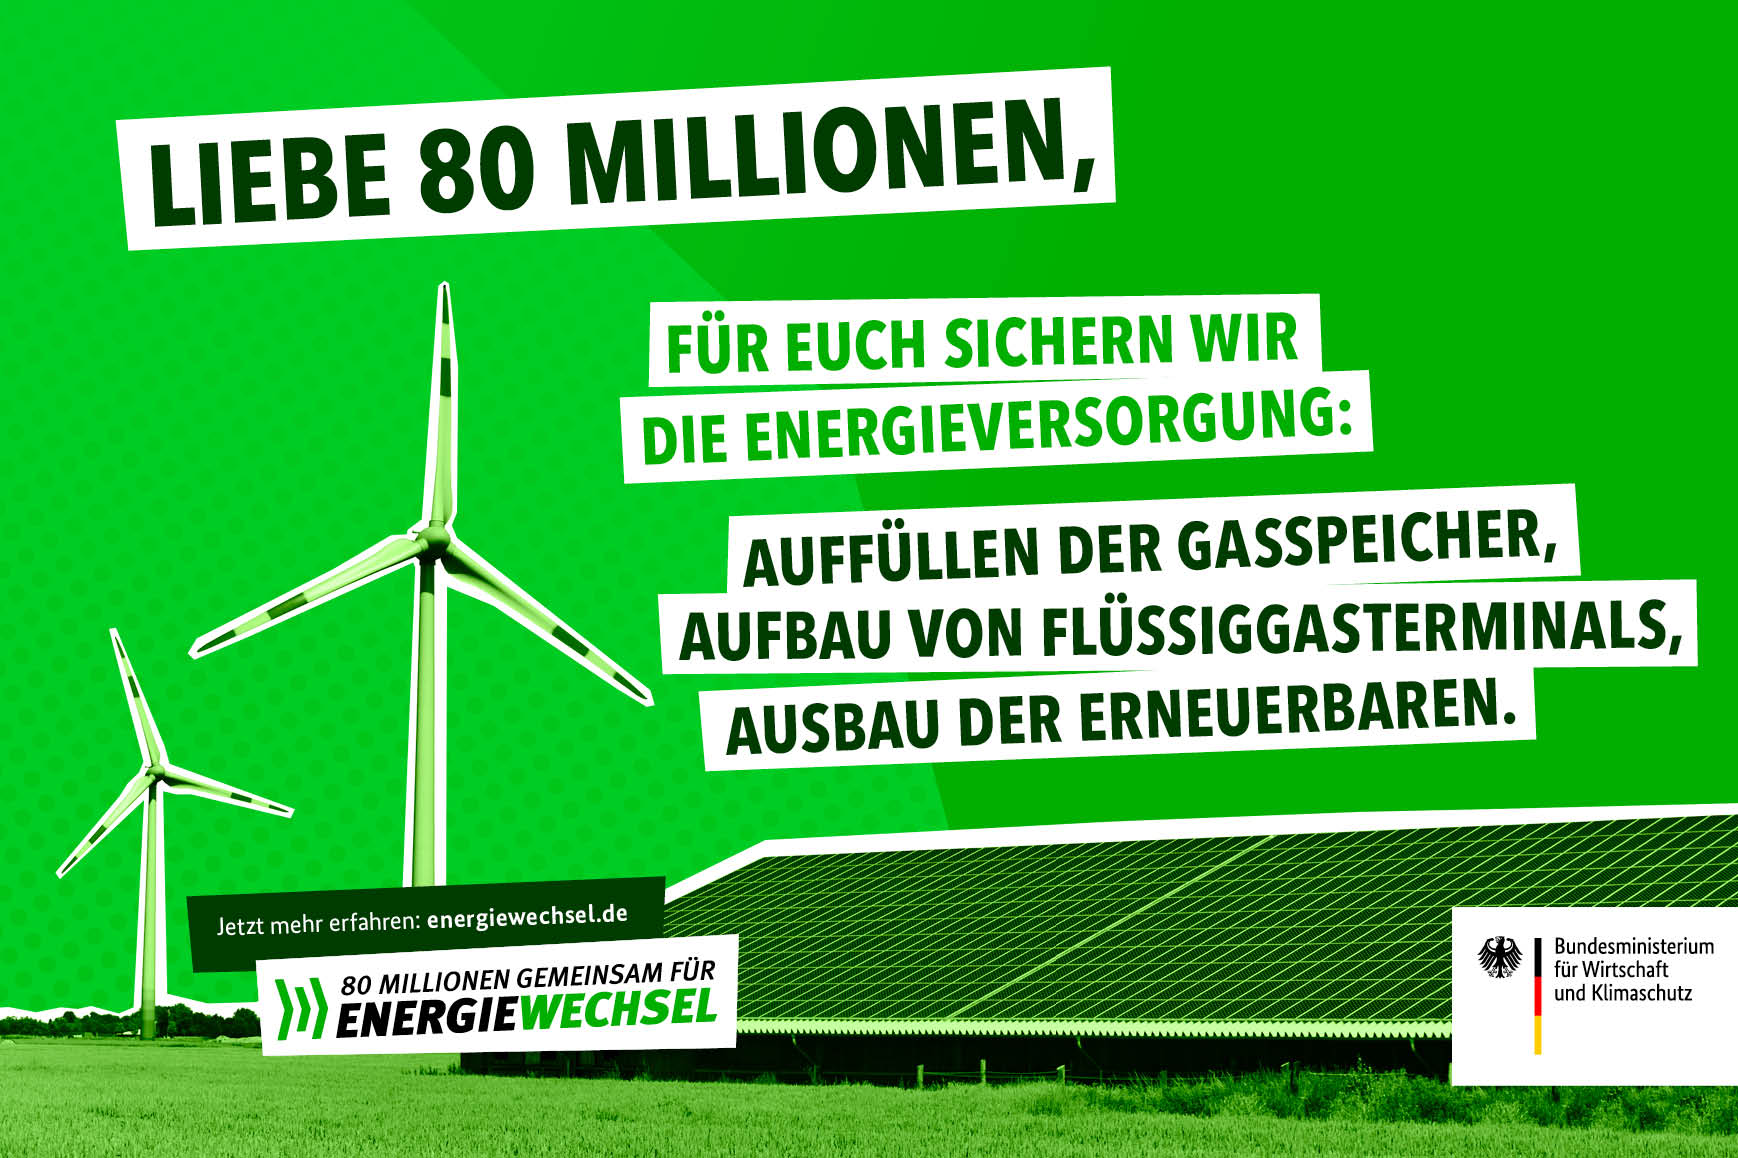 Kampagnenmotiv „Liebe 80 Millionen” (Sichere Energieversorgung) | 80 Millionen gemeinsam für Energiewechsel